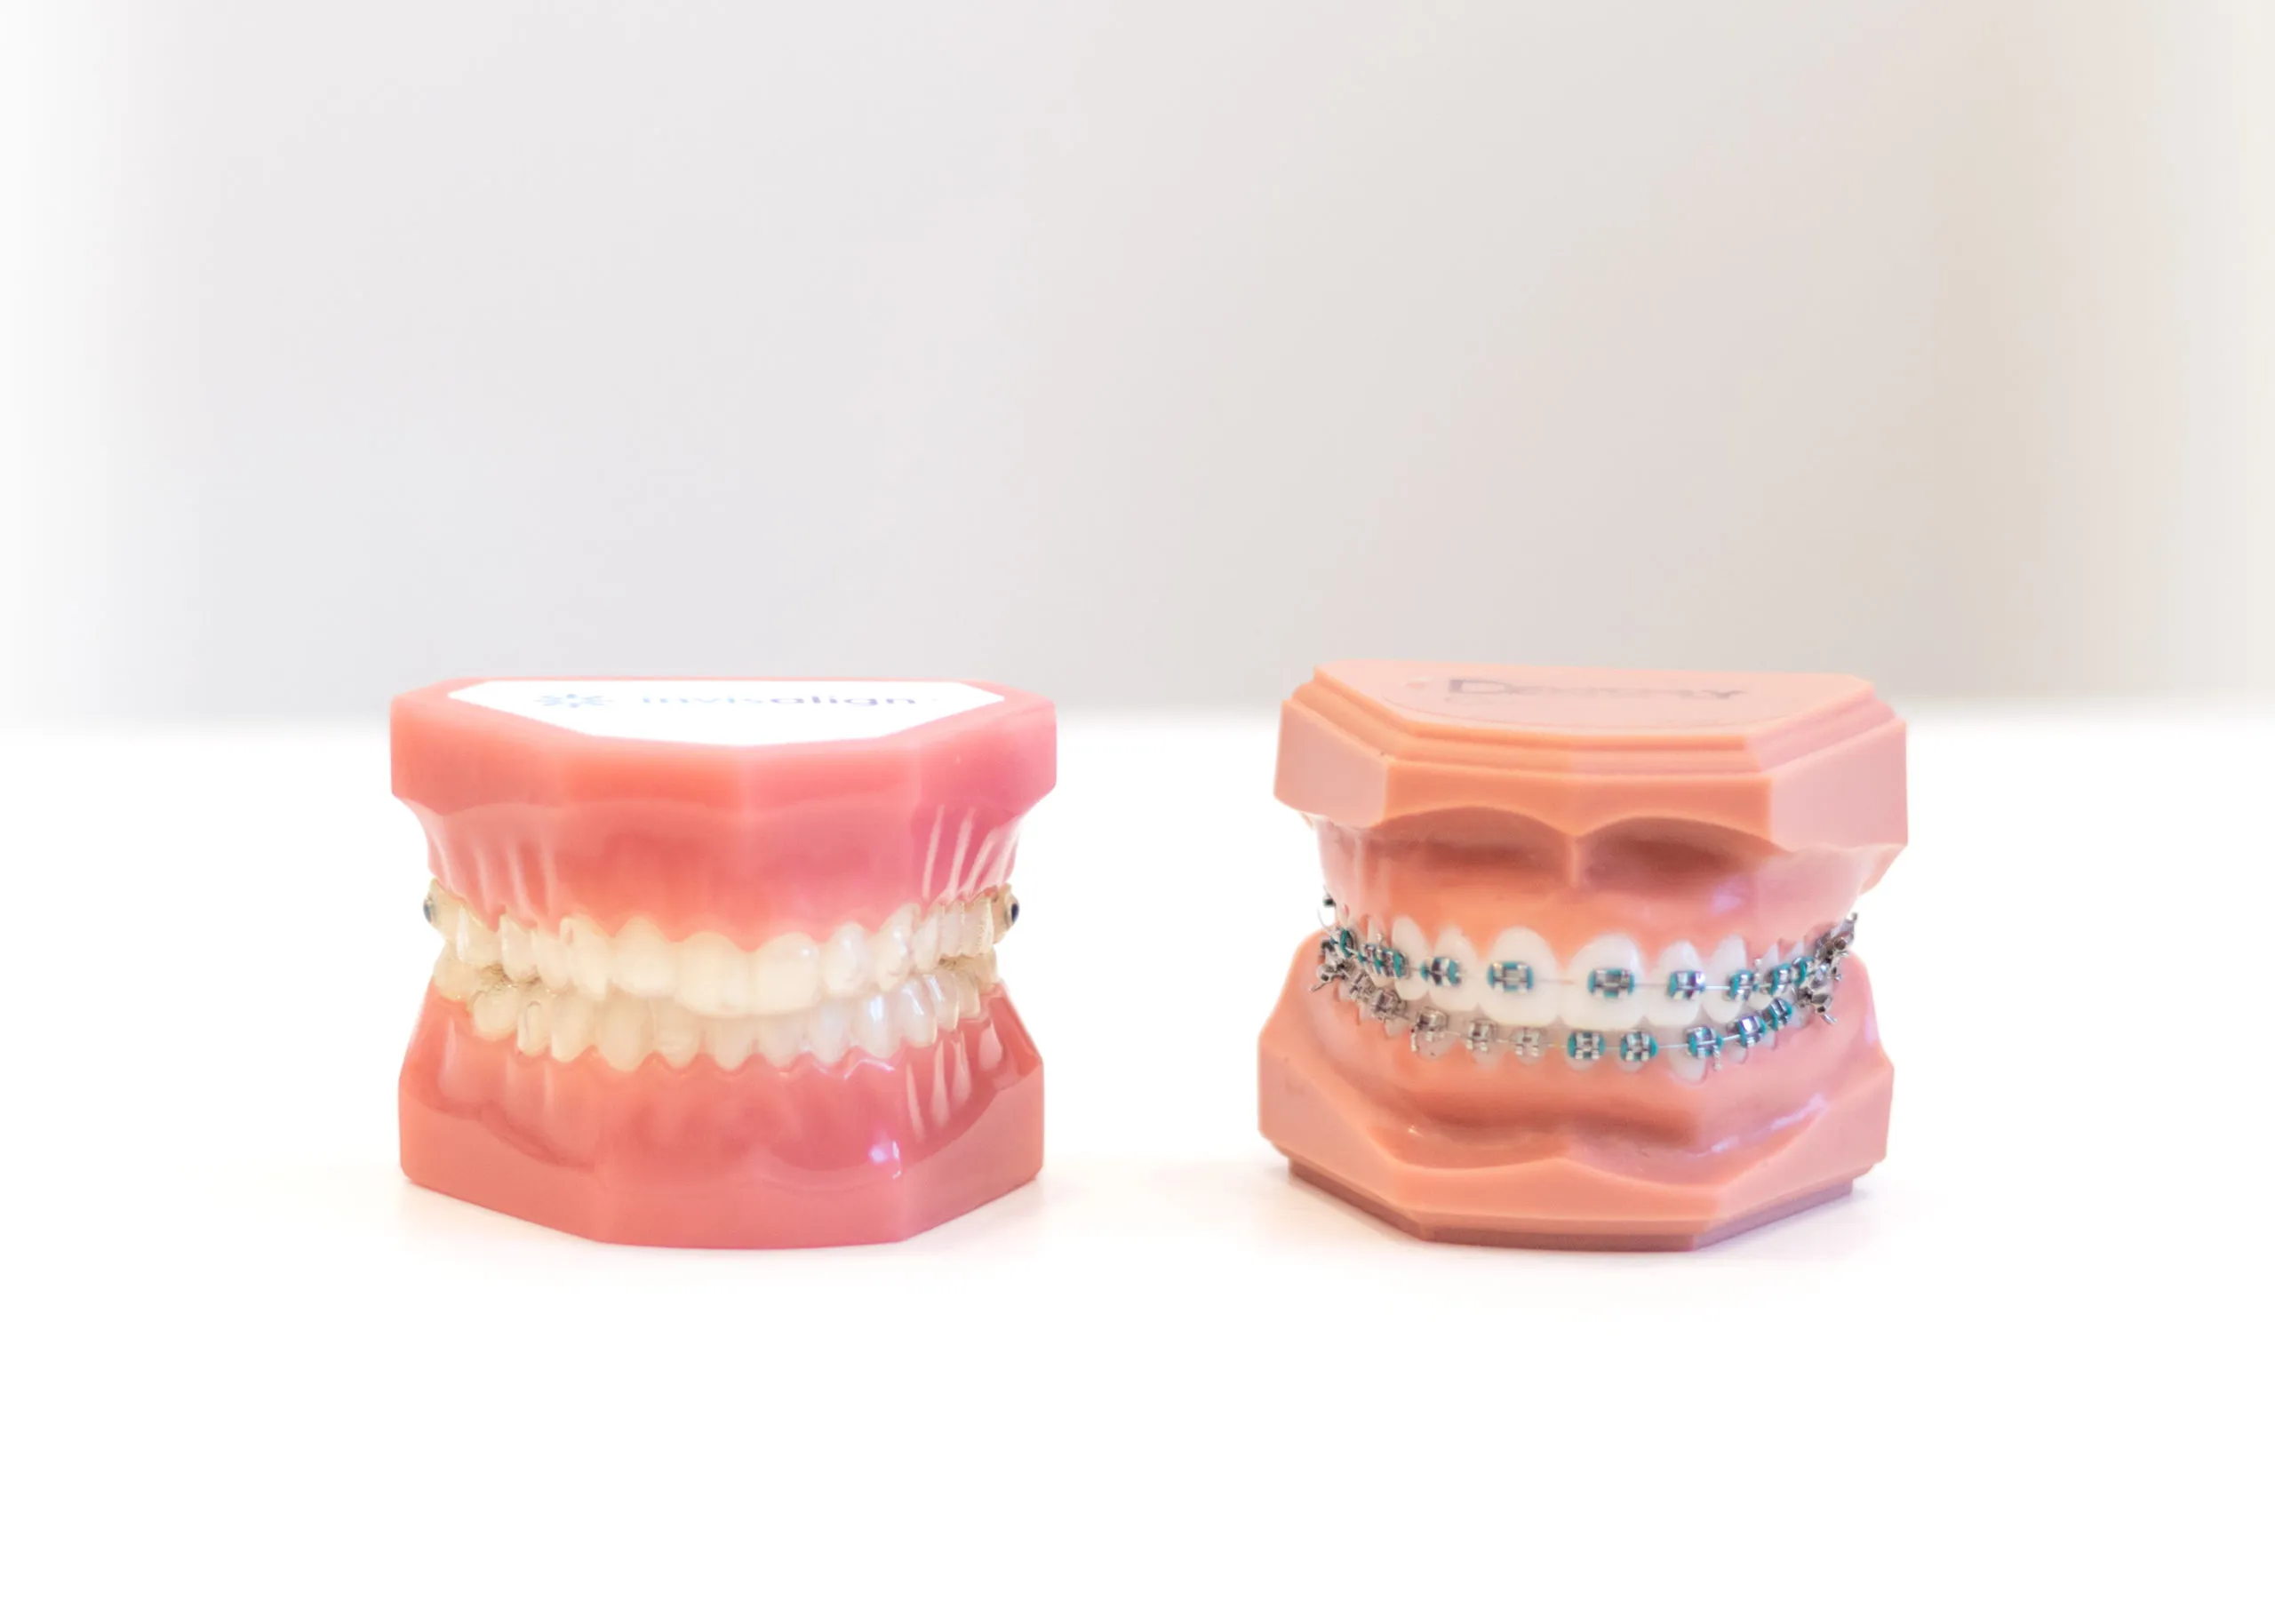 ارتودنسی یا کامپوزیت ؟کدام برای دندان من بهتر است